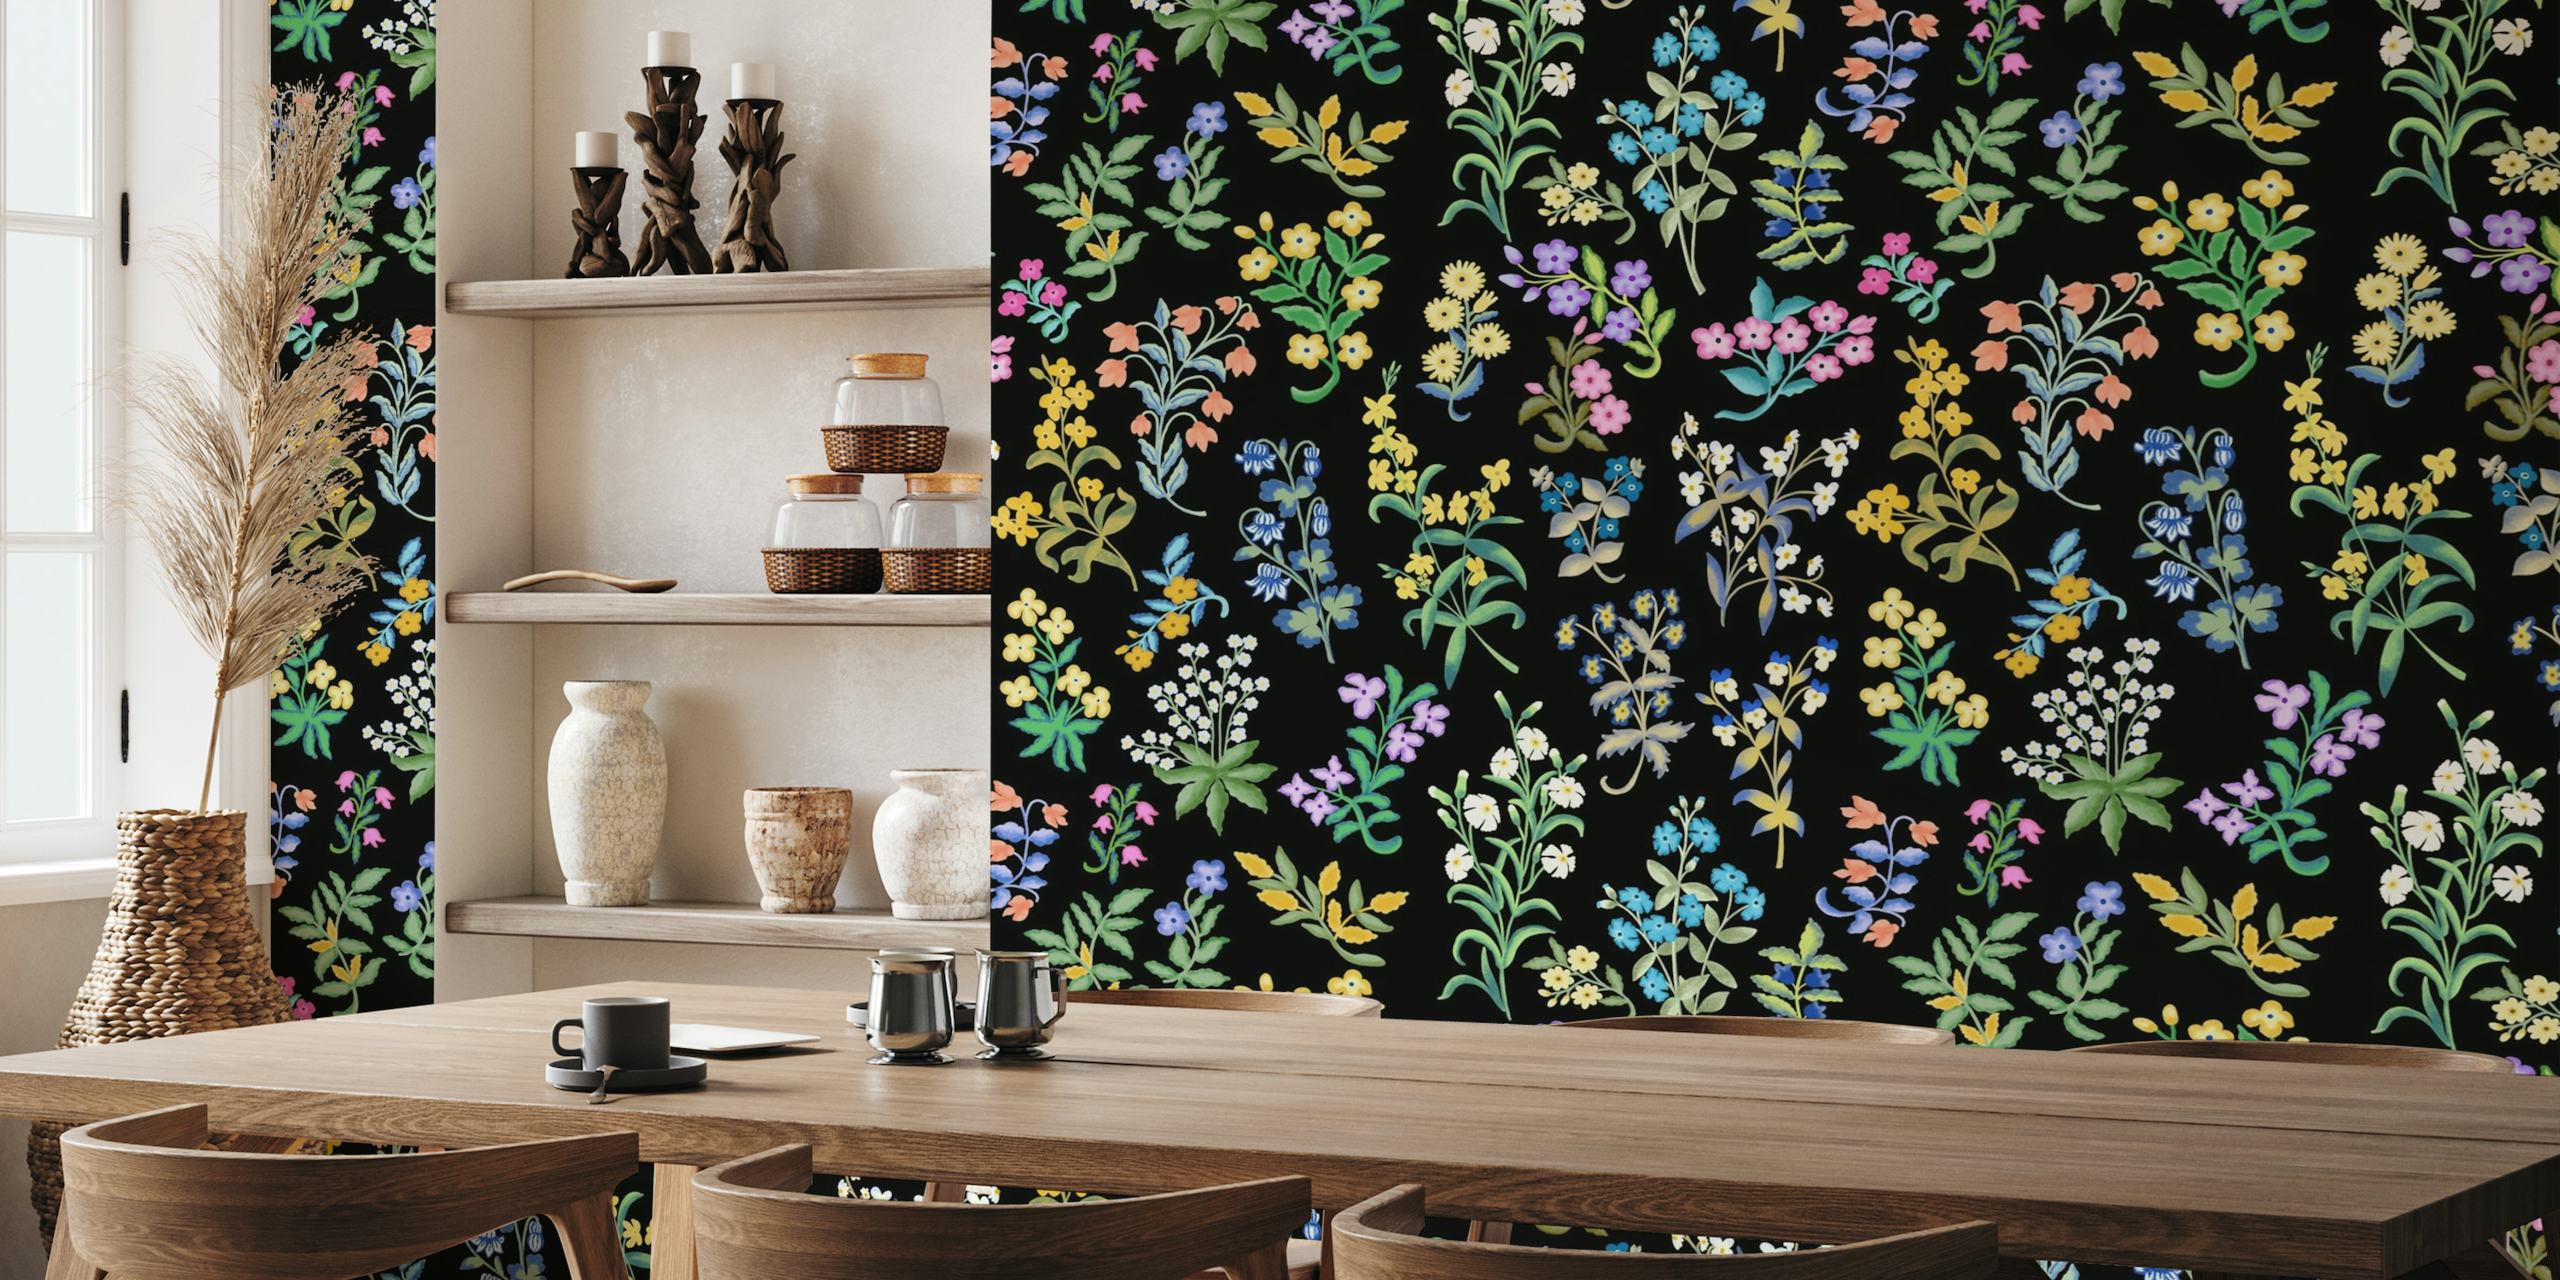 Muurschildering met Millefleurs-patroon met diverse kleurrijke bloemen op een zwarte achtergrond